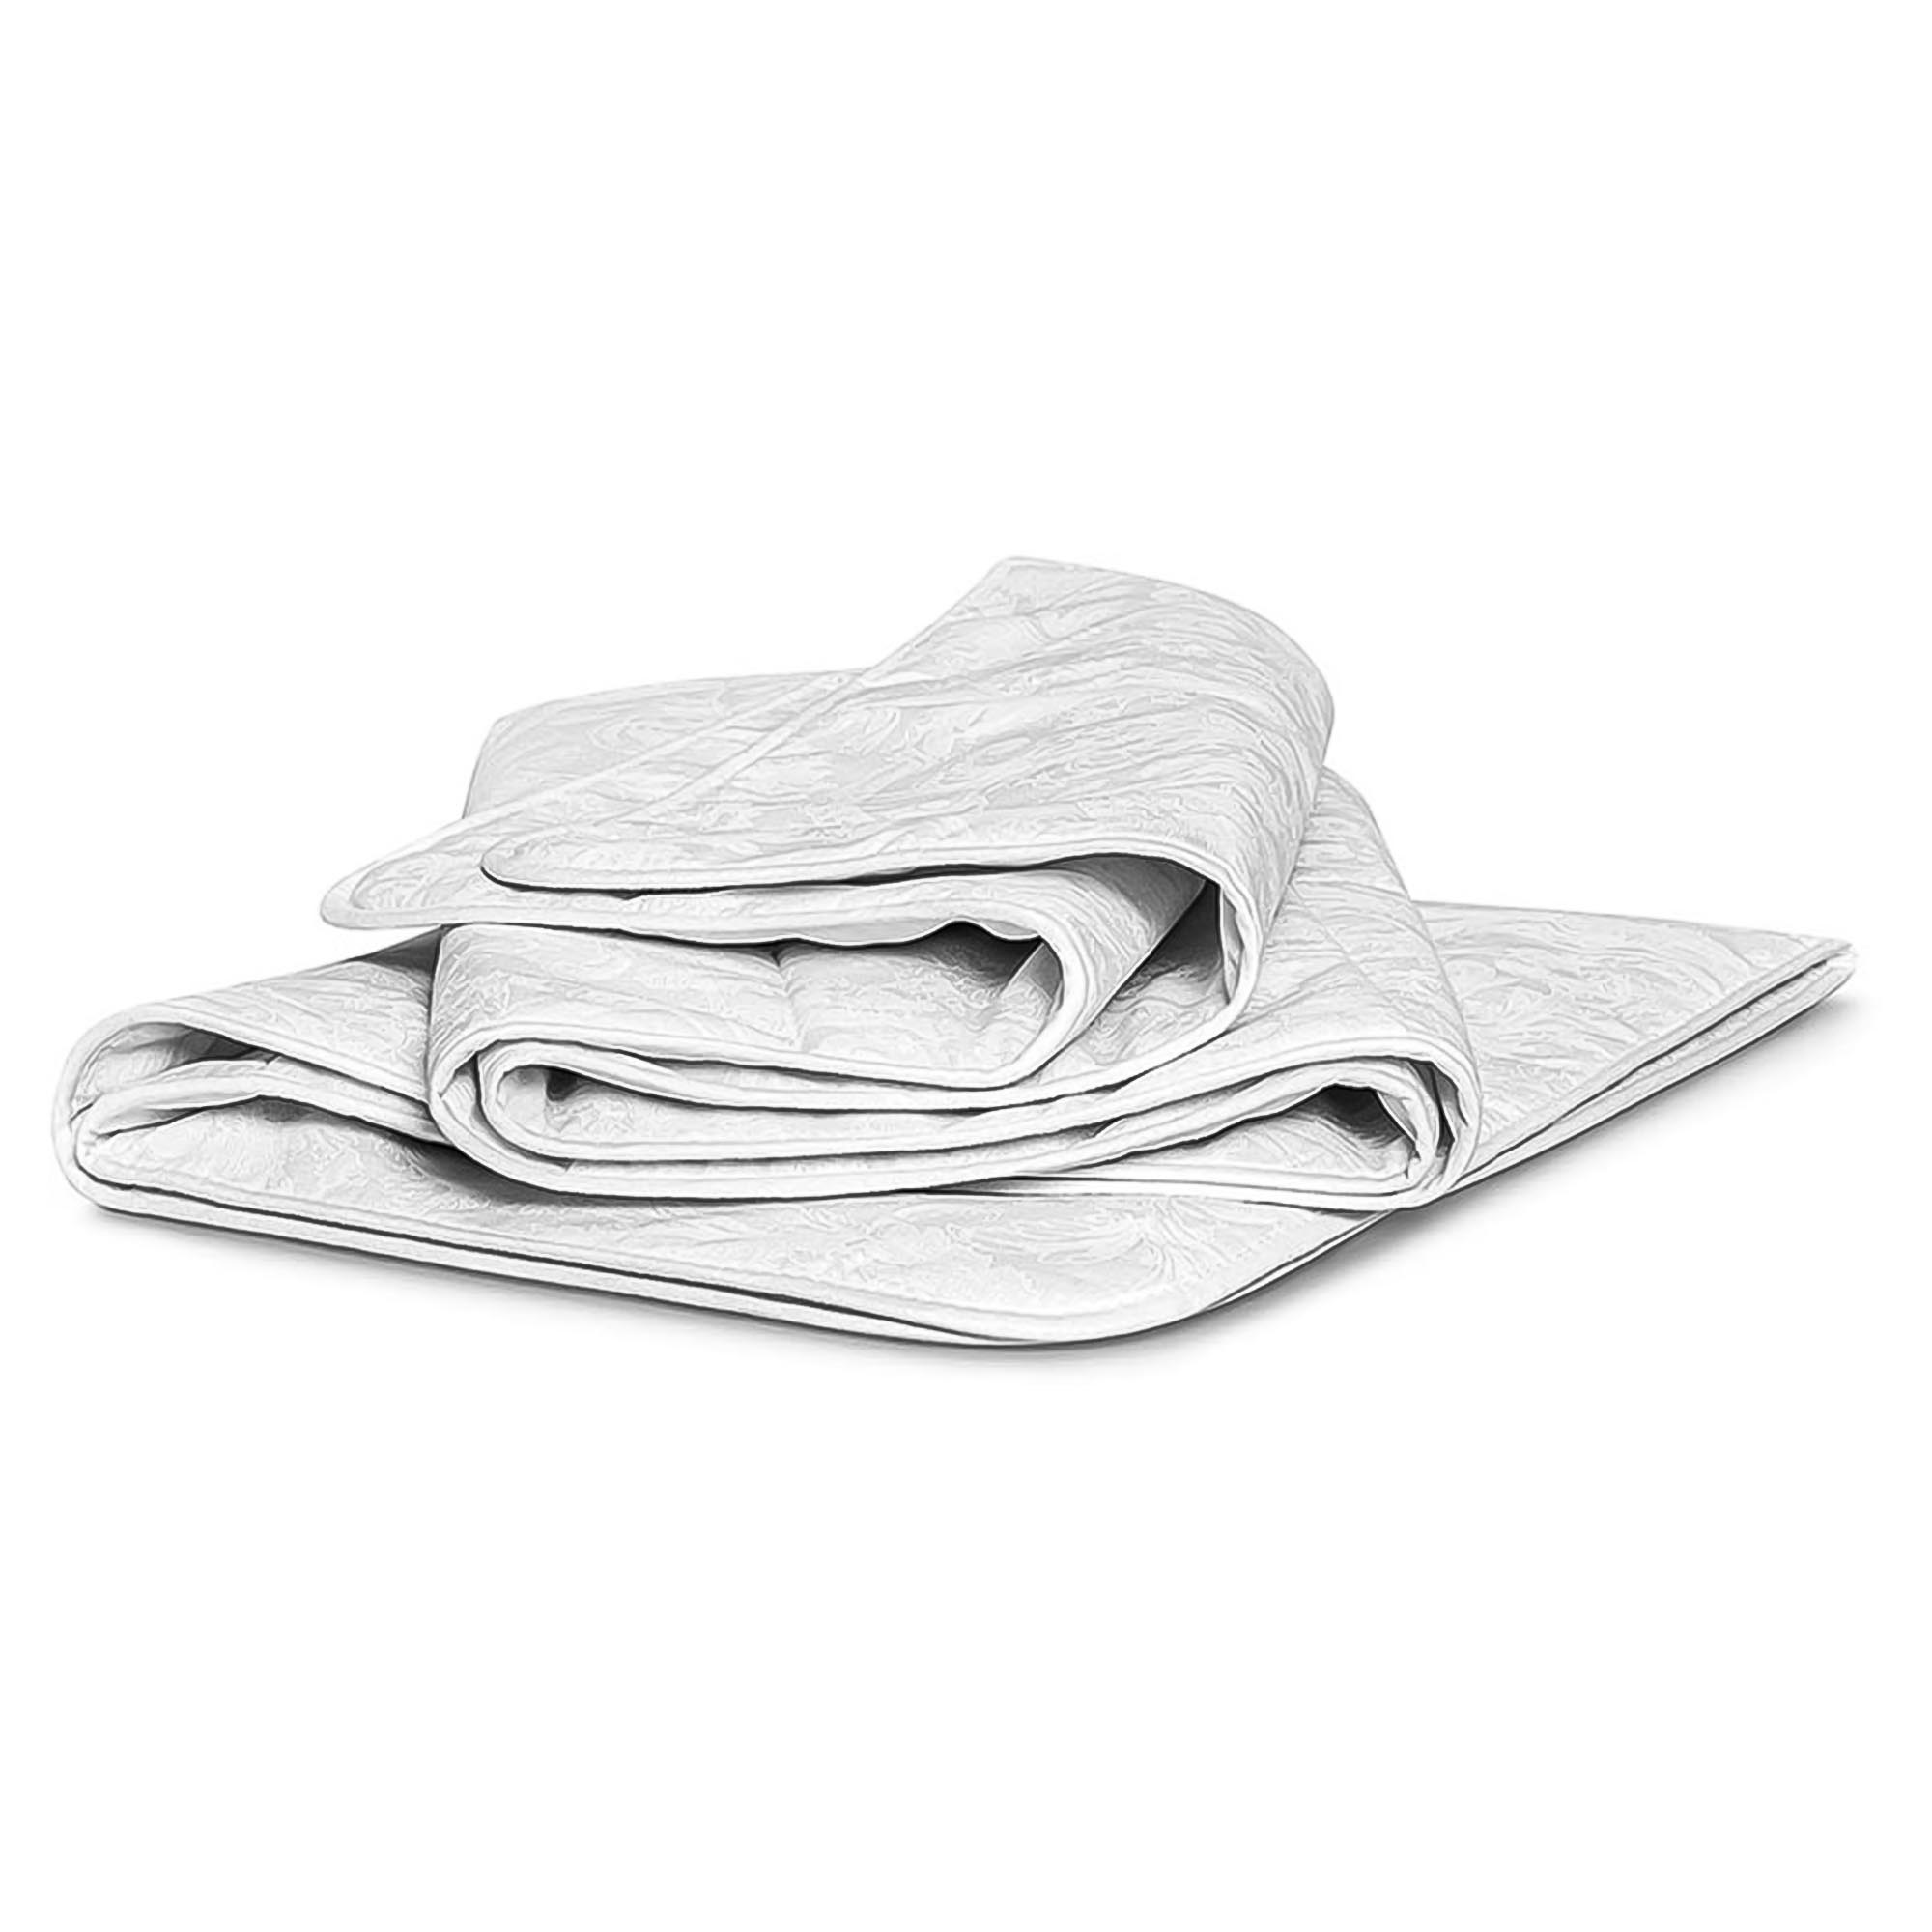 Одеяло Medsleep Skylor белое 175х200 см, цвет белый - фото 3